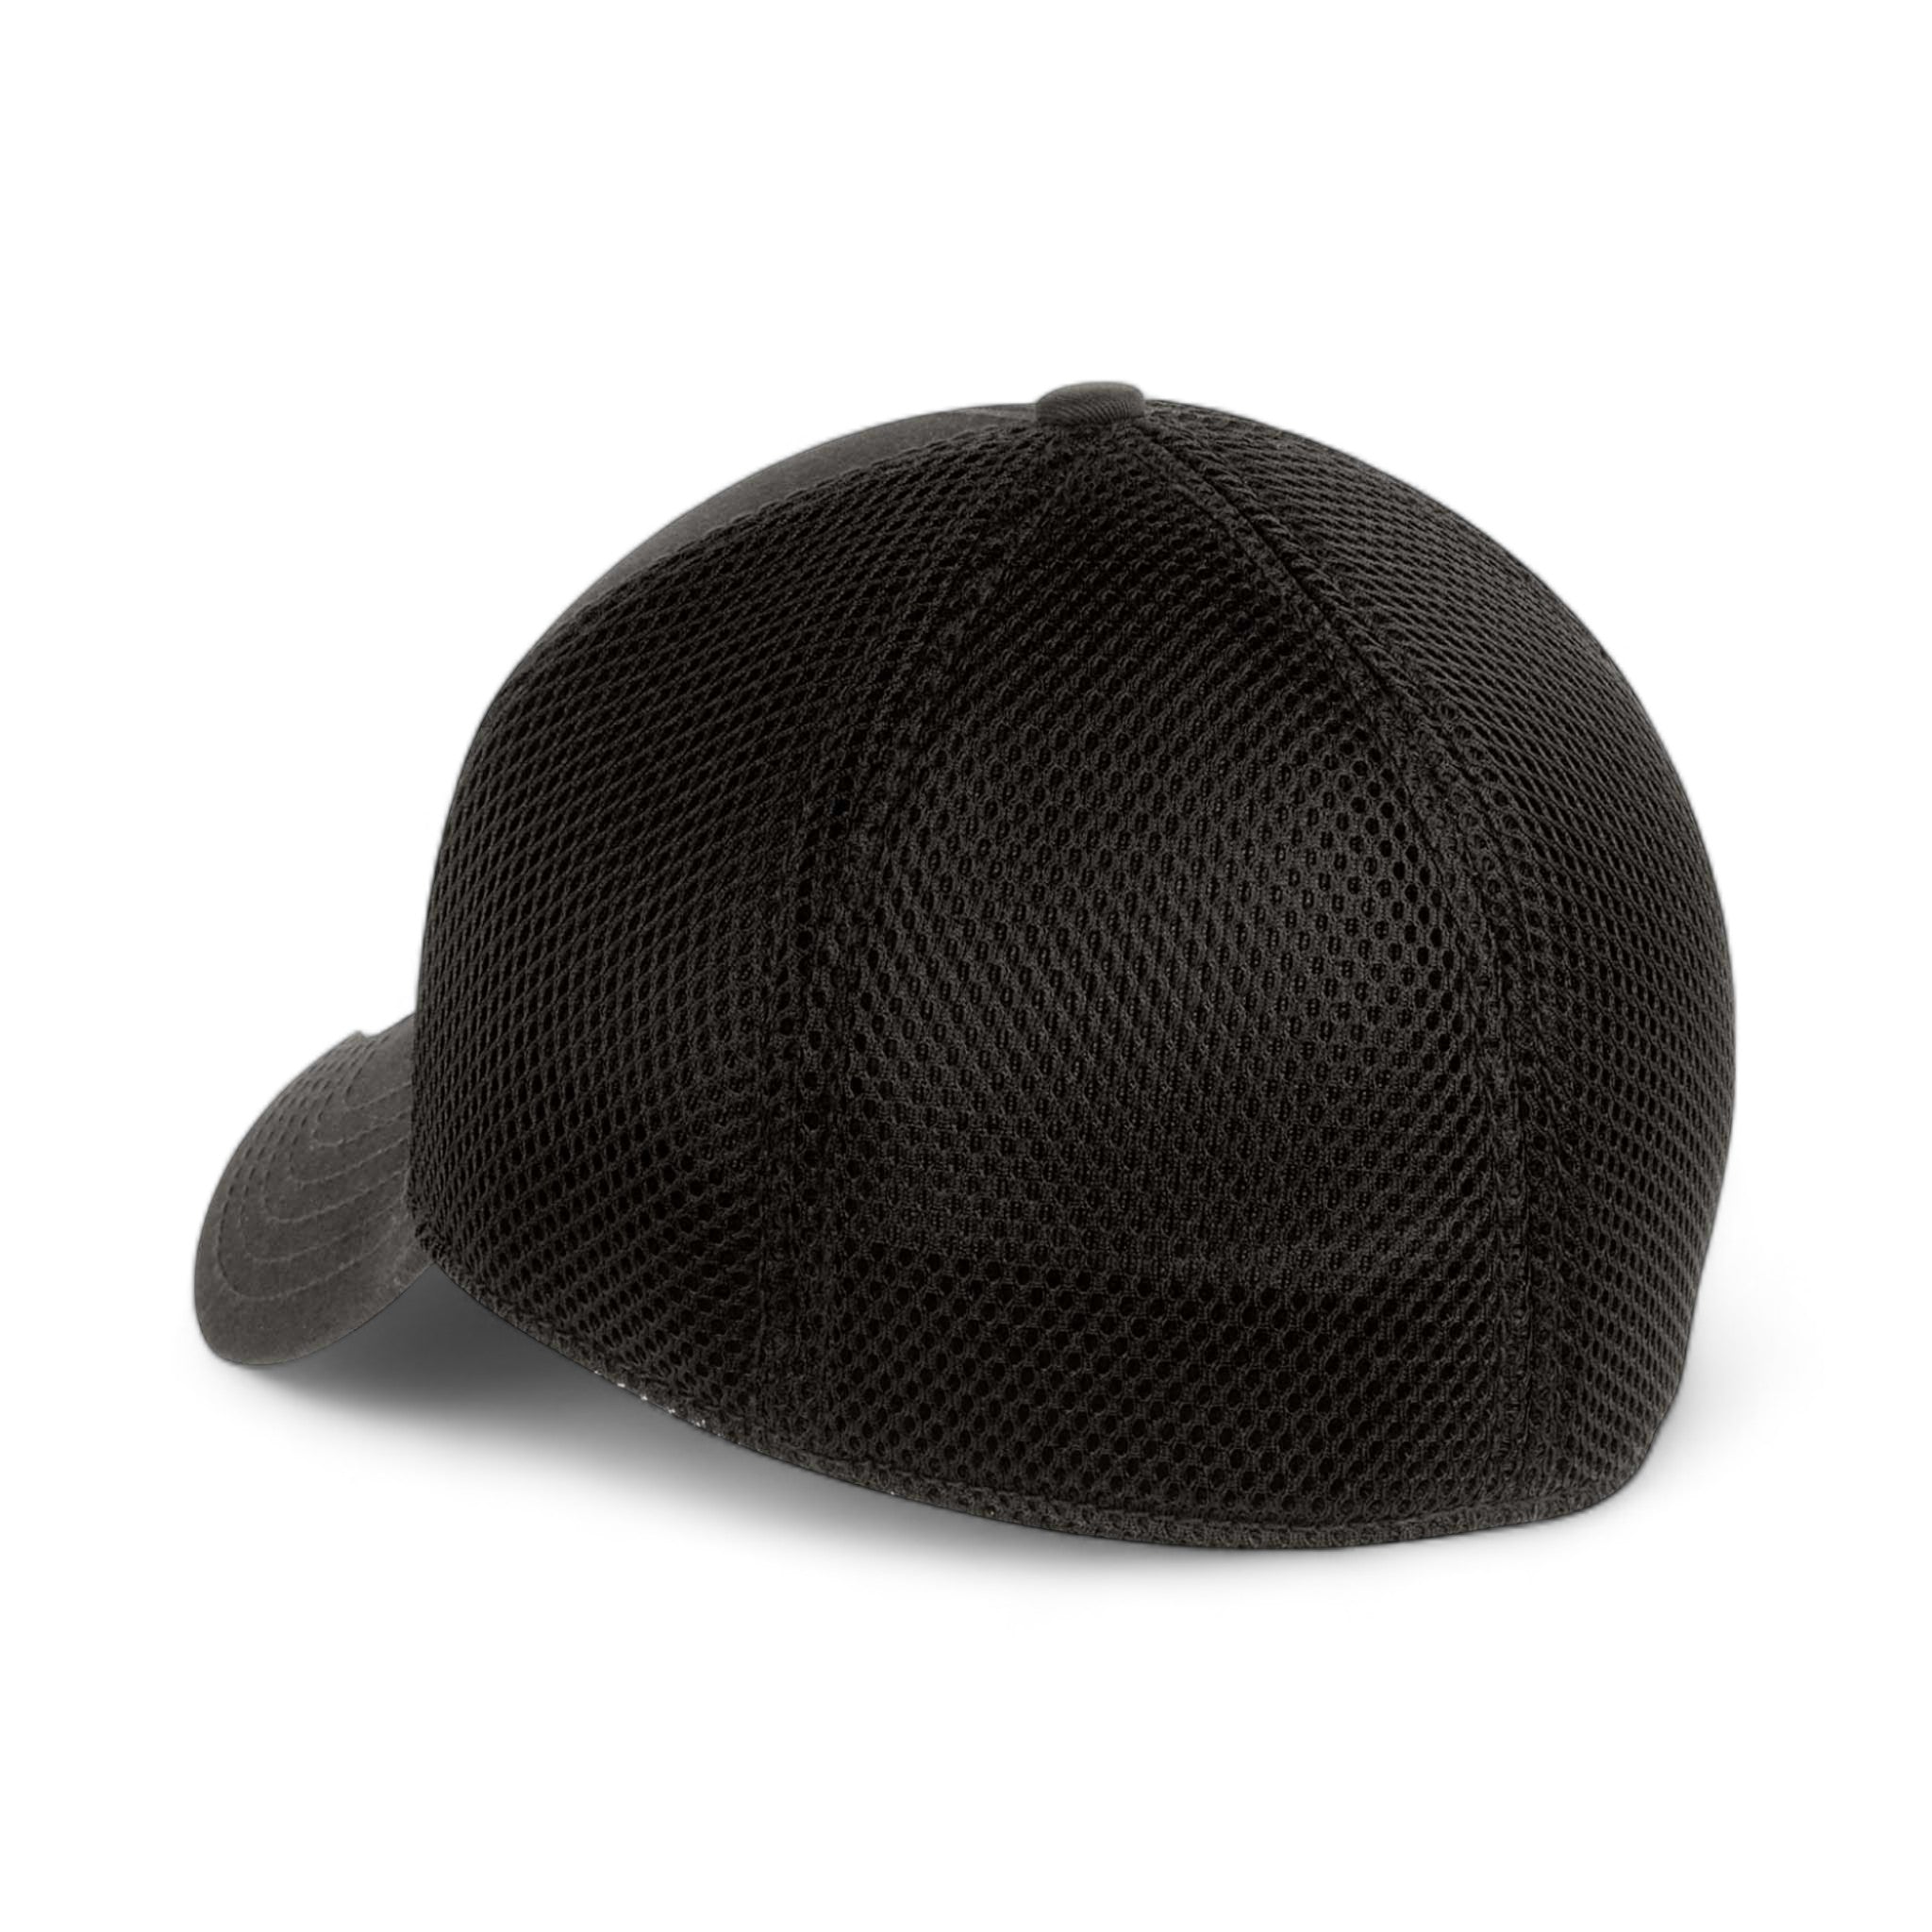 Back view of New Era NE1020 custom hat in black